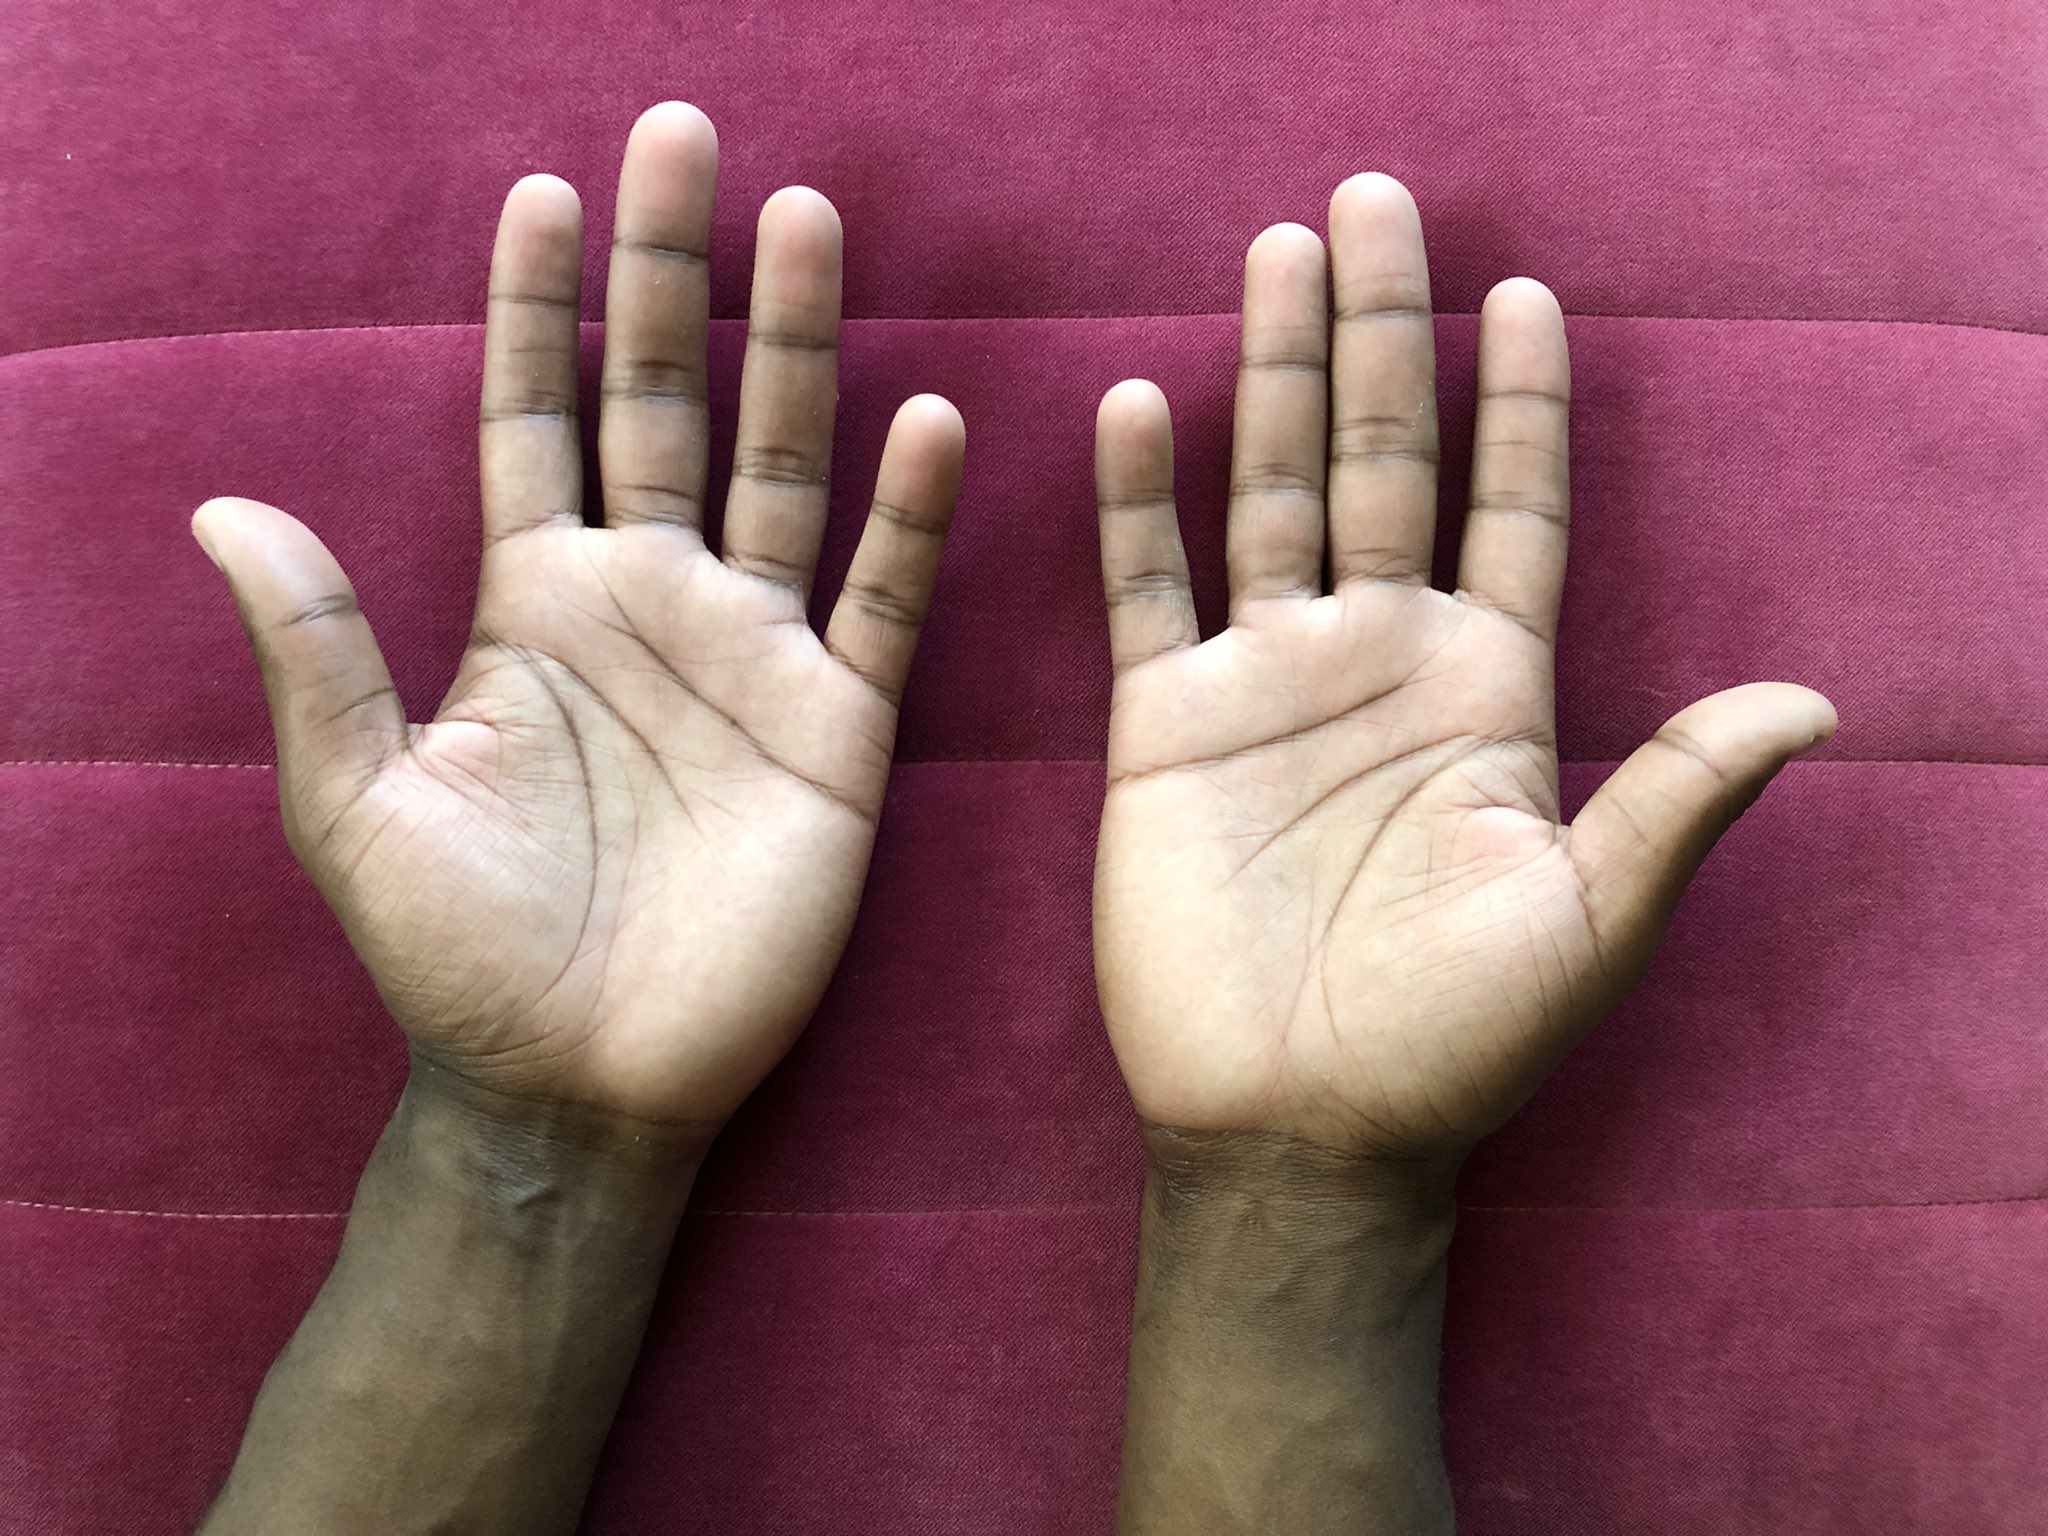 Vivi Devereaux - Các đường nét đôi tay: Với các tấm ảnh đầy mỹ thuật của Vivi Devereaux, bạn sẽ được ngắm nhìn các đường khắc sâu của đôi tay cô nàng tài năng này. Những bức ảnh này sẽ làm cho bạn đắm chìm trong thế giới của nghệ sĩ và cảm nhận được tình yêu và sự tâm huyết của họ với nghệ thuật.